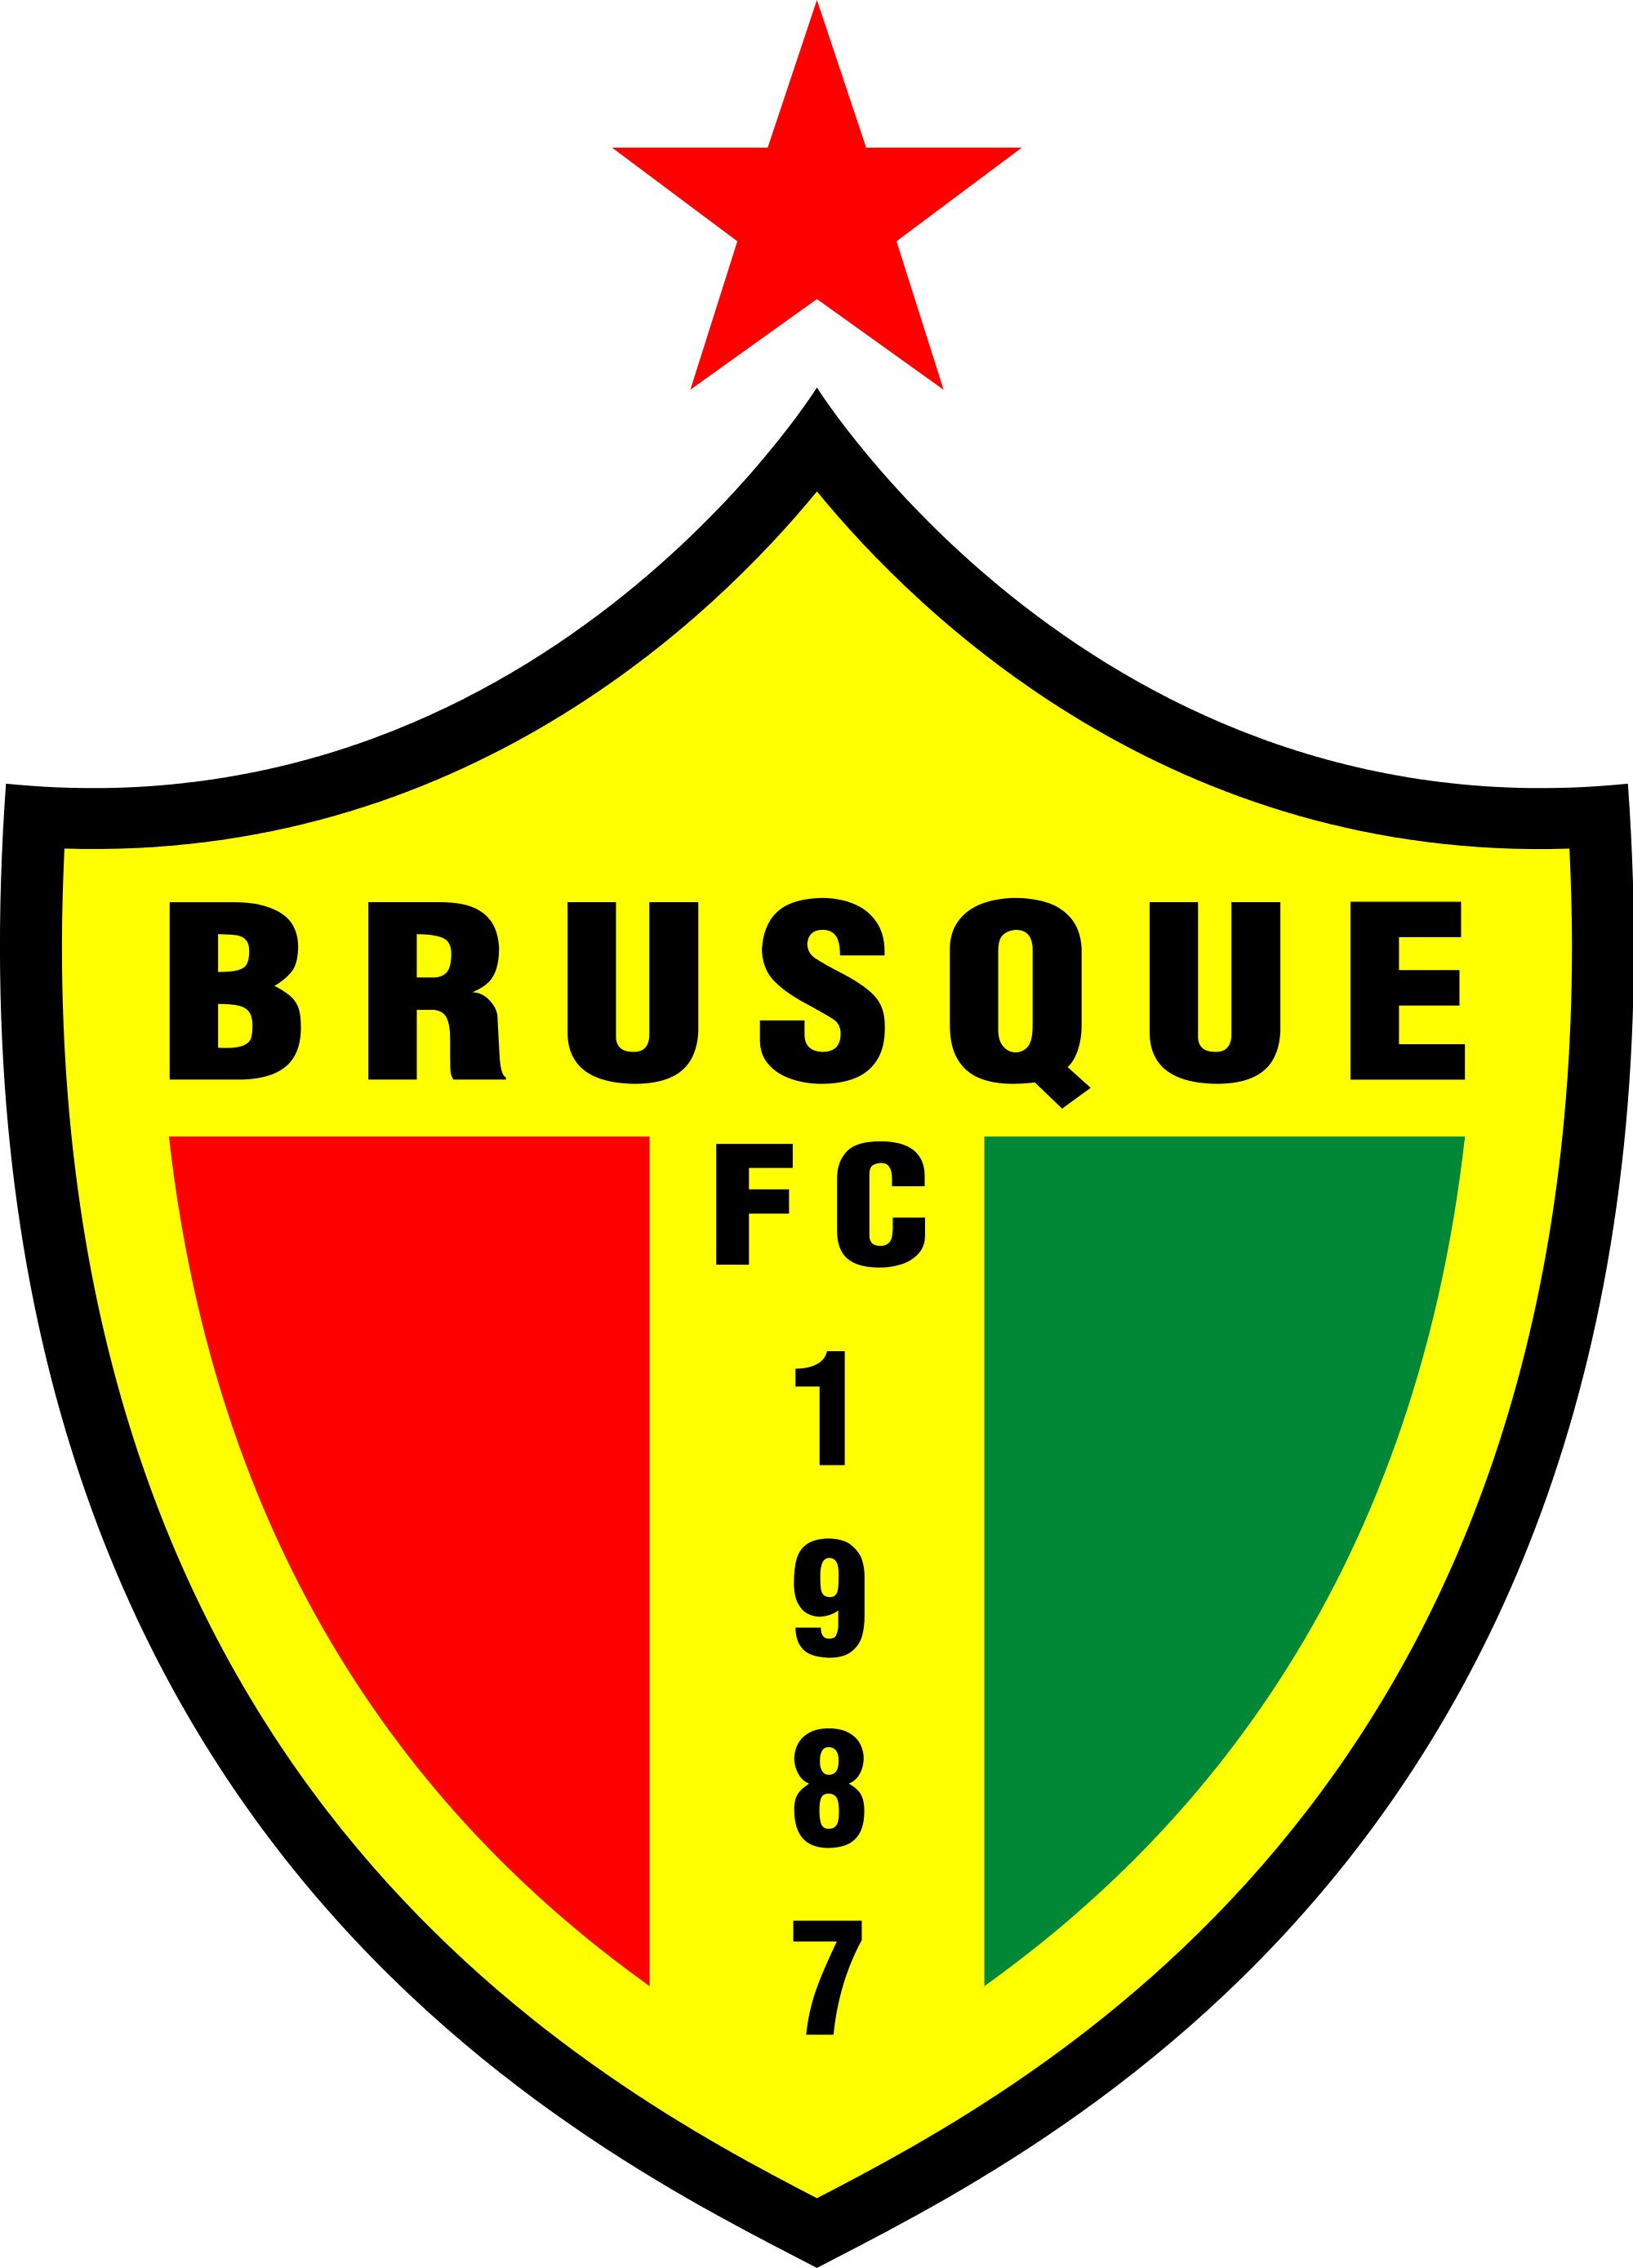 File Brusque Fc Sc - Brusque Futebol Clube (2000x2778)